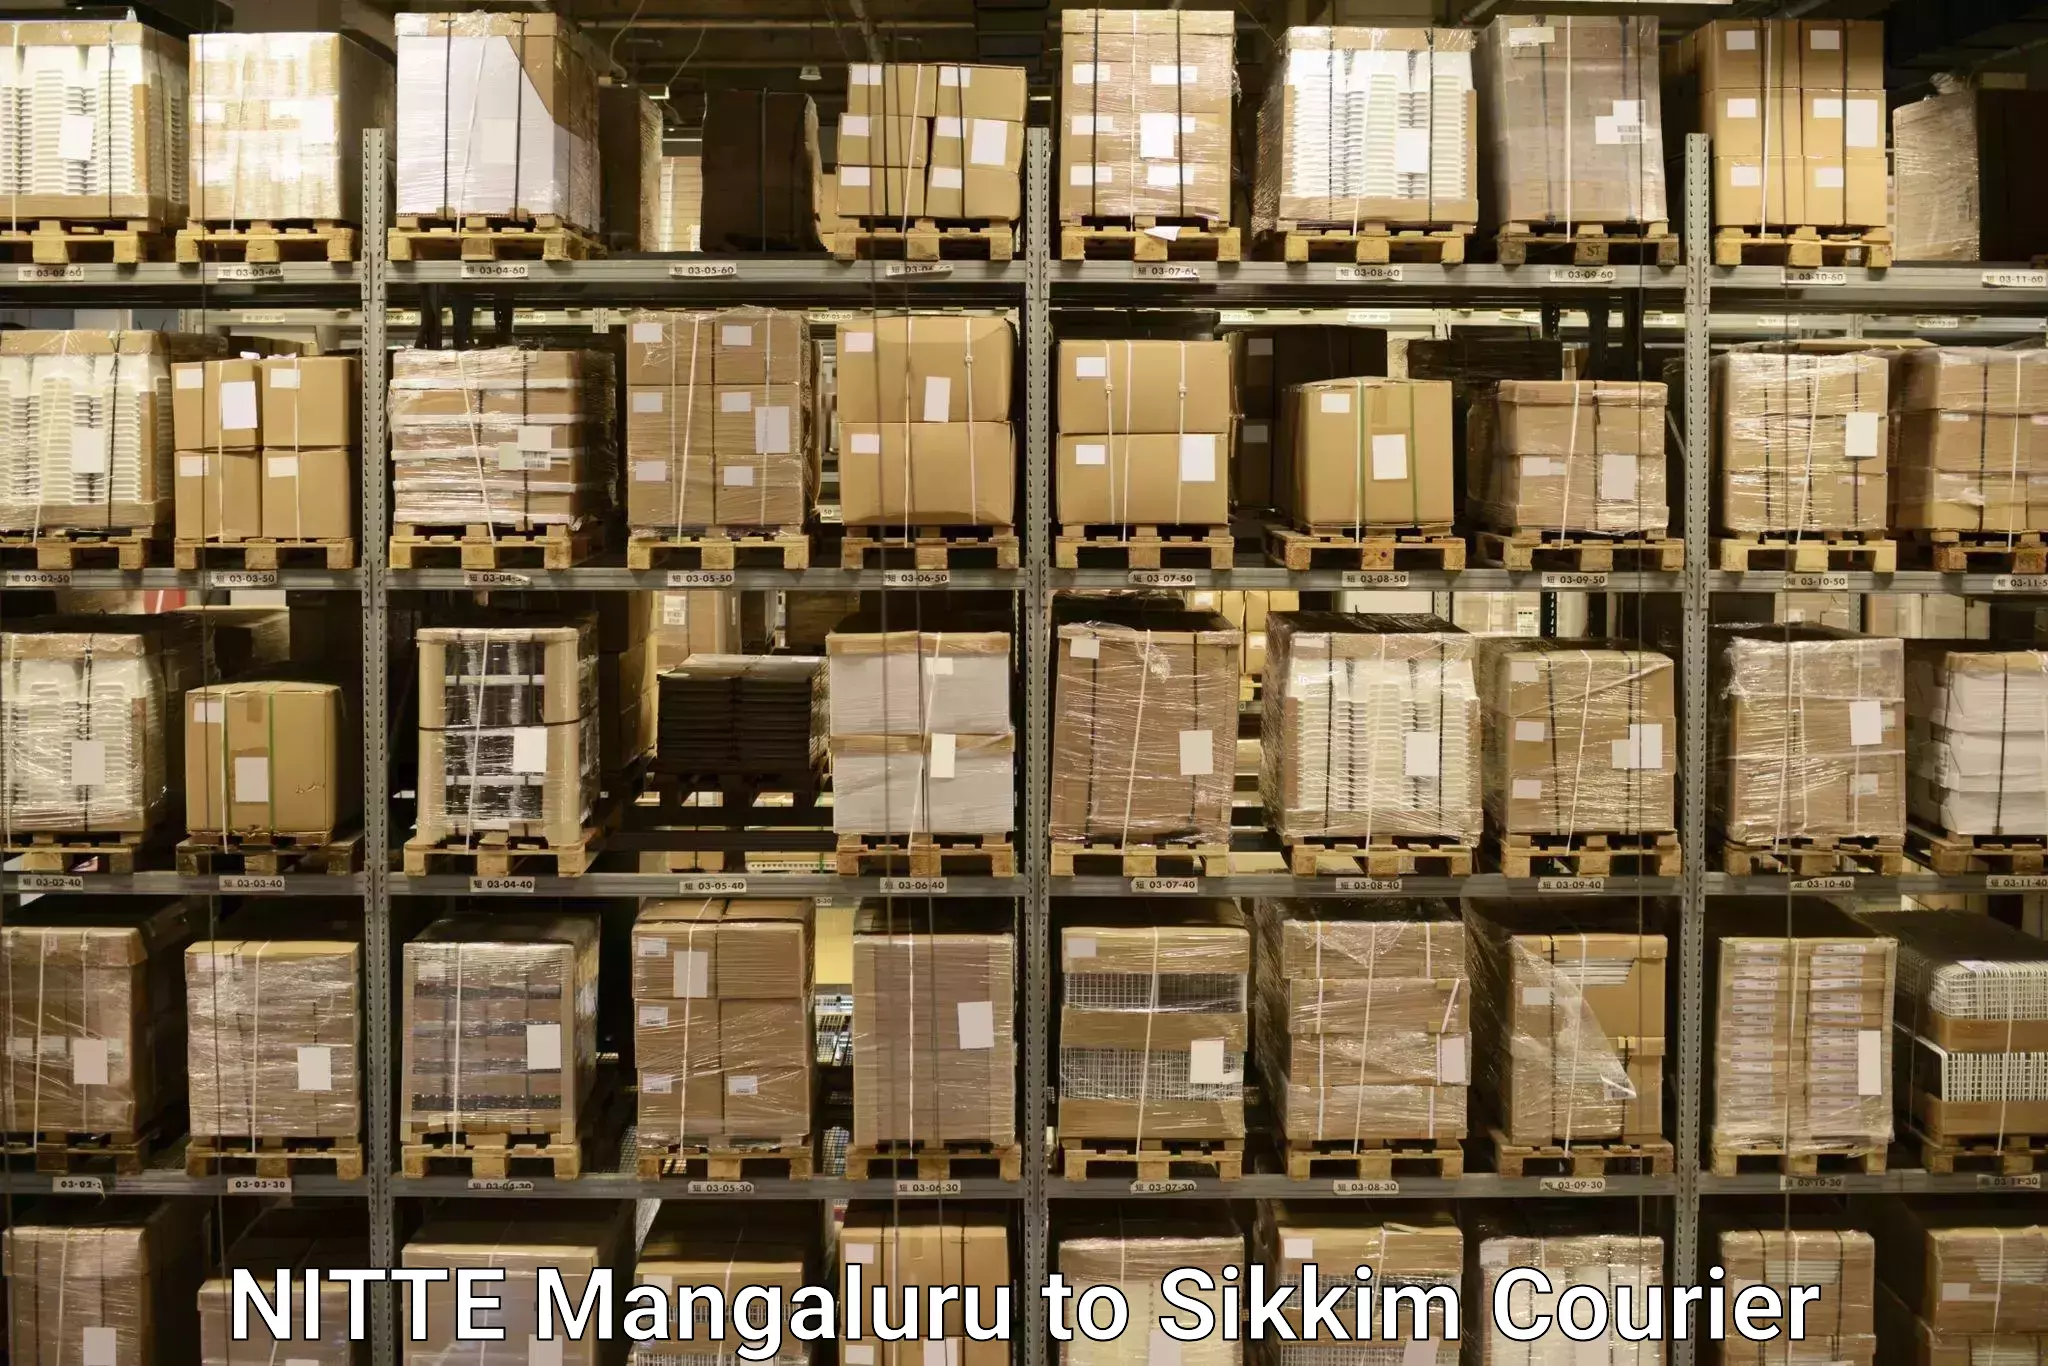 Quick baggage pickup NITTE Mangaluru to Pelling